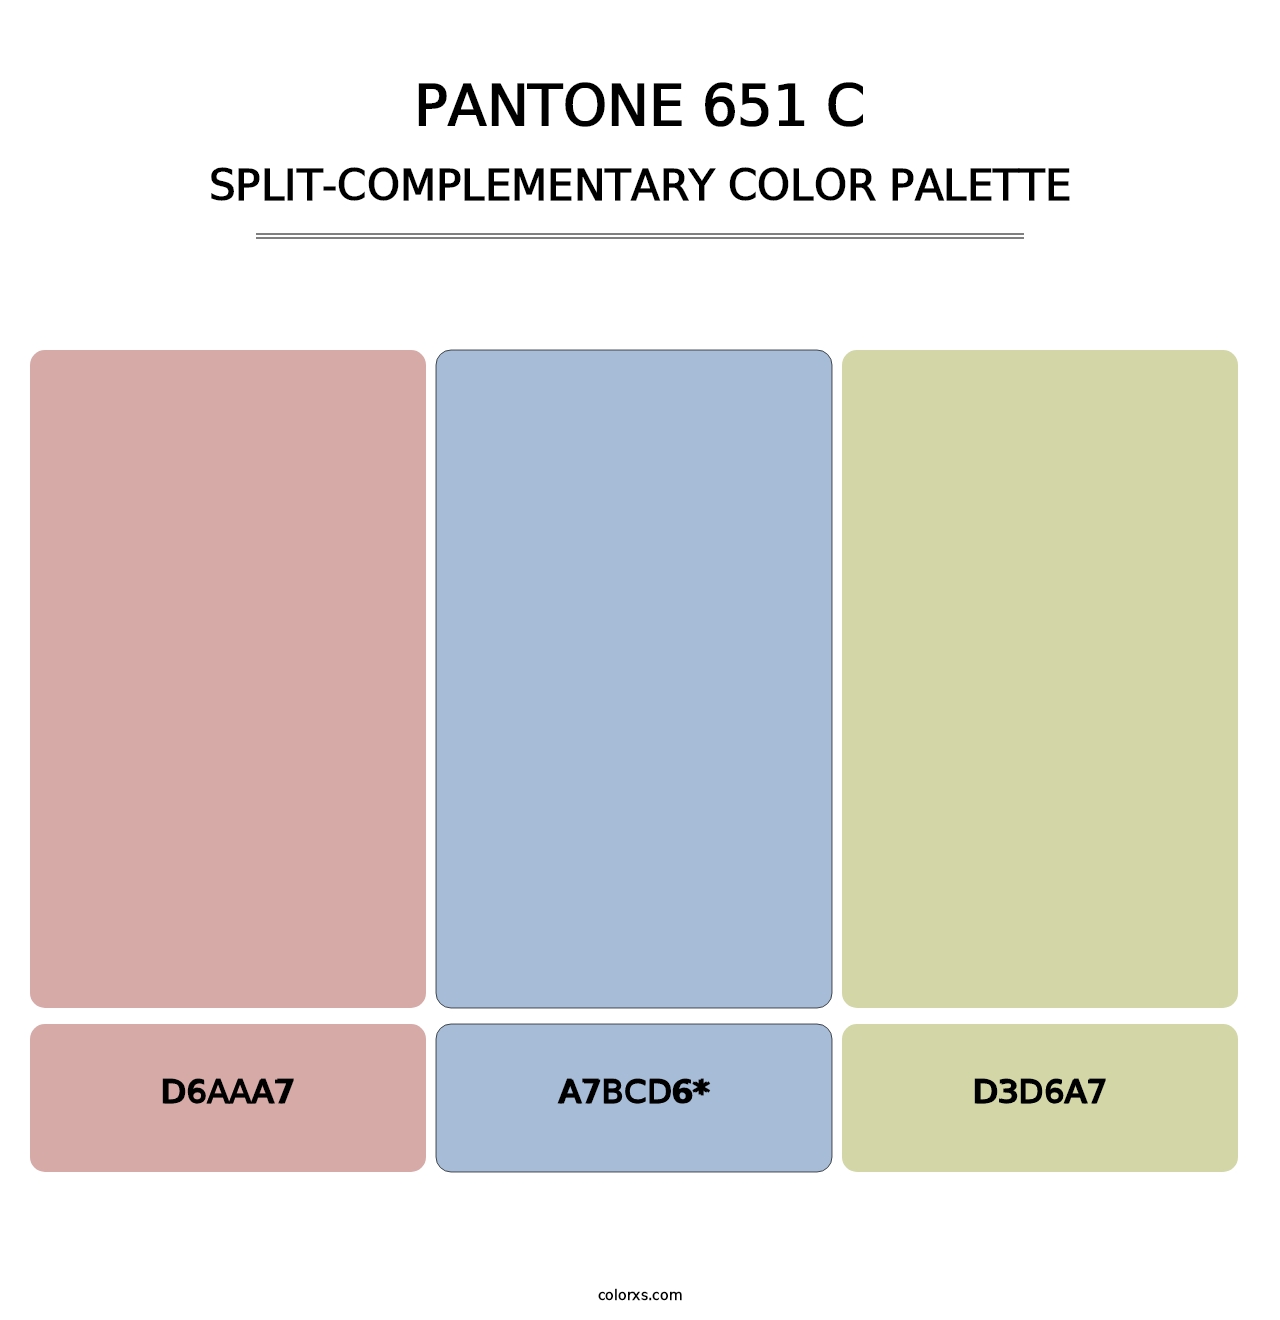 PANTONE 651 C - Split-Complementary Color Palette